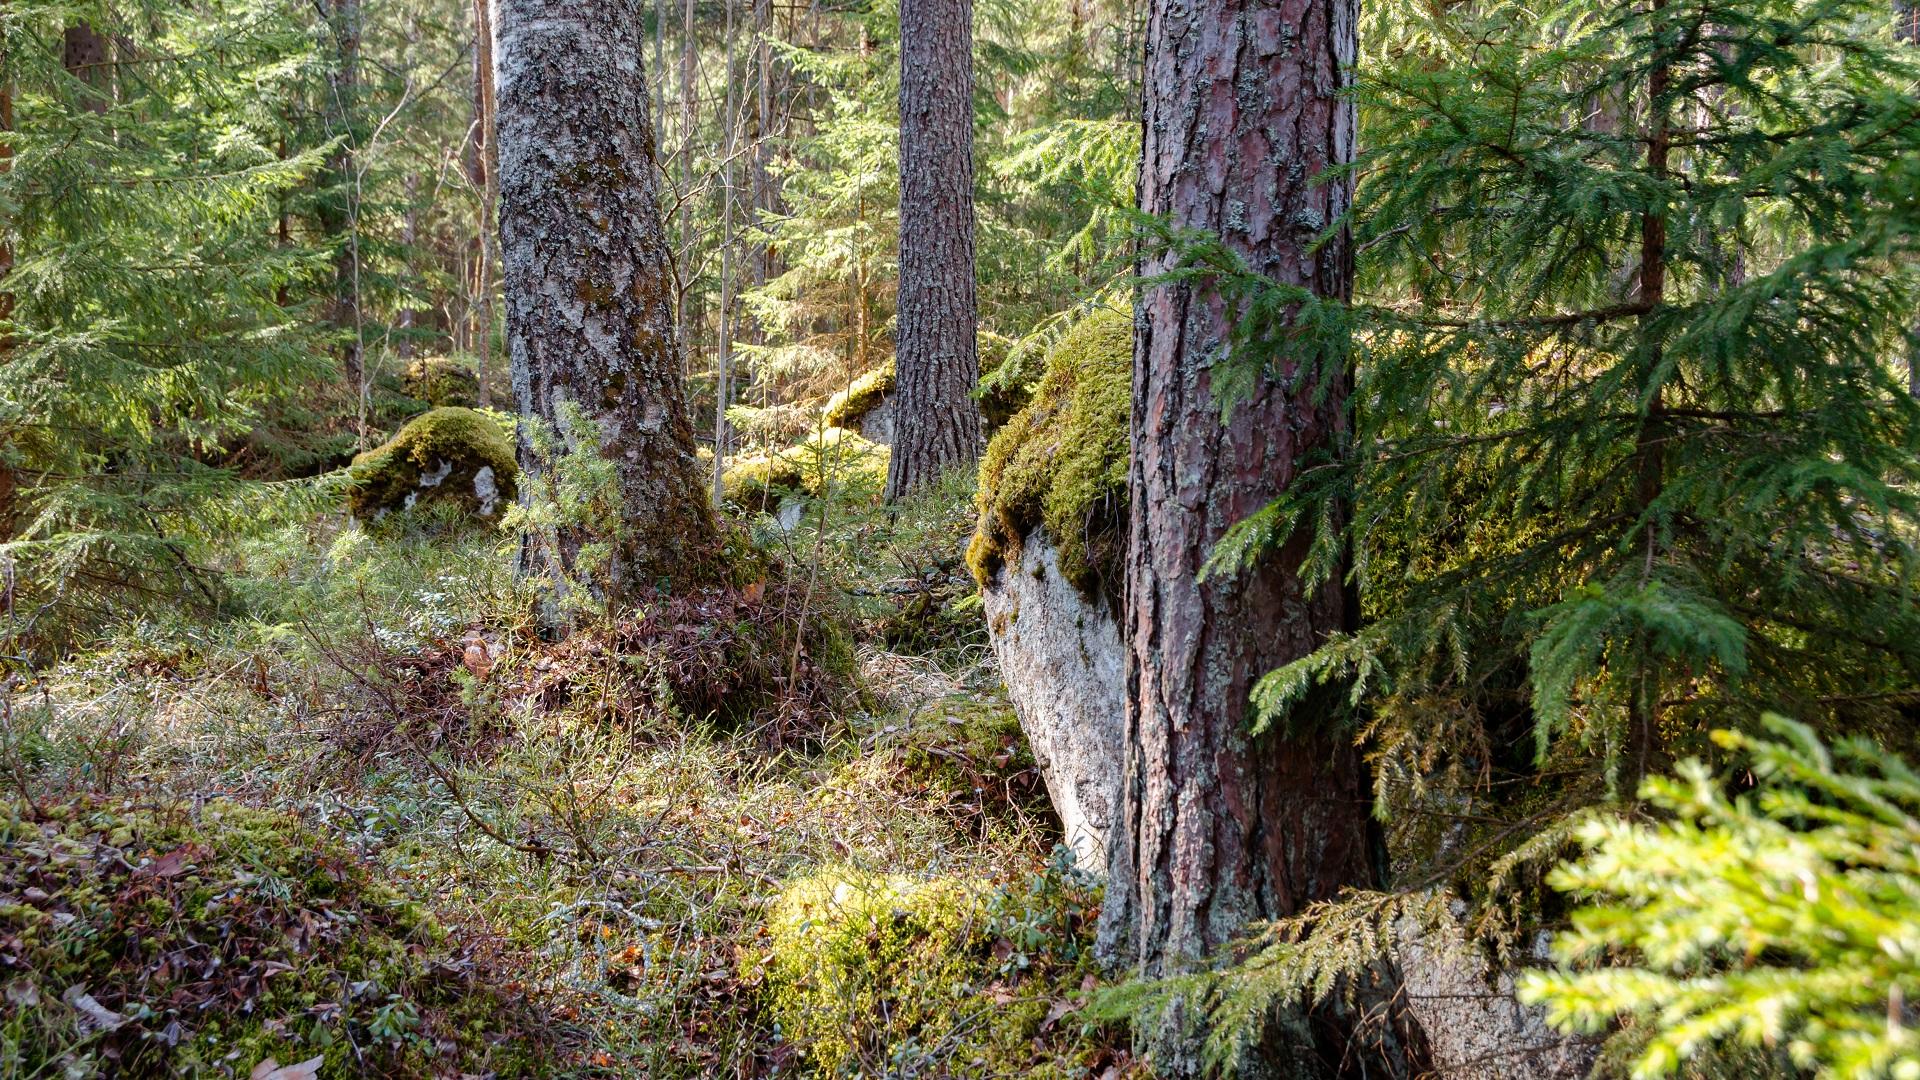 Luke jatkaa havuparikkaan ekologian tutkimista Suomen oloissa. Tavoitteena on tuottaa metsänhoitosuosituksia taudin vähentämiseksi. Kuva: Shutterstock